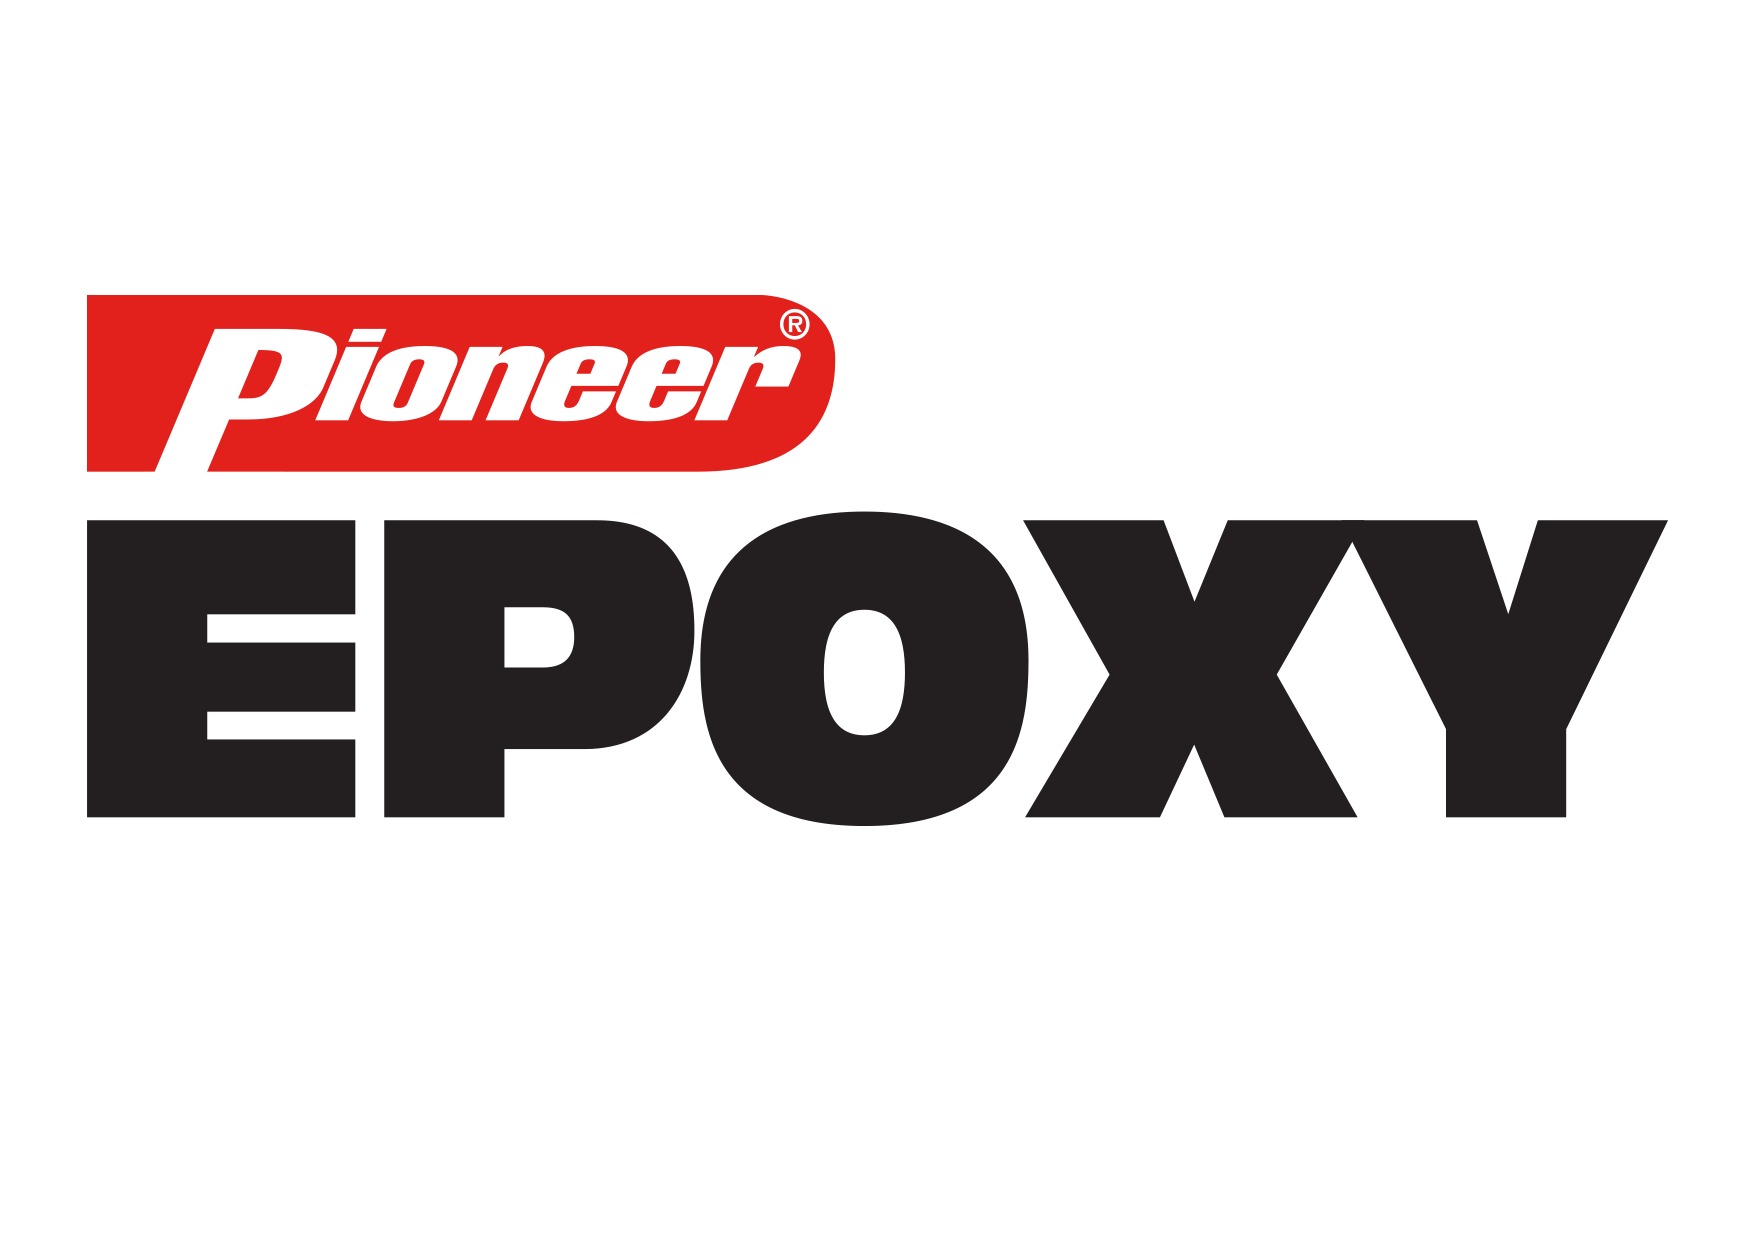 Pioneer Epoxy Logo